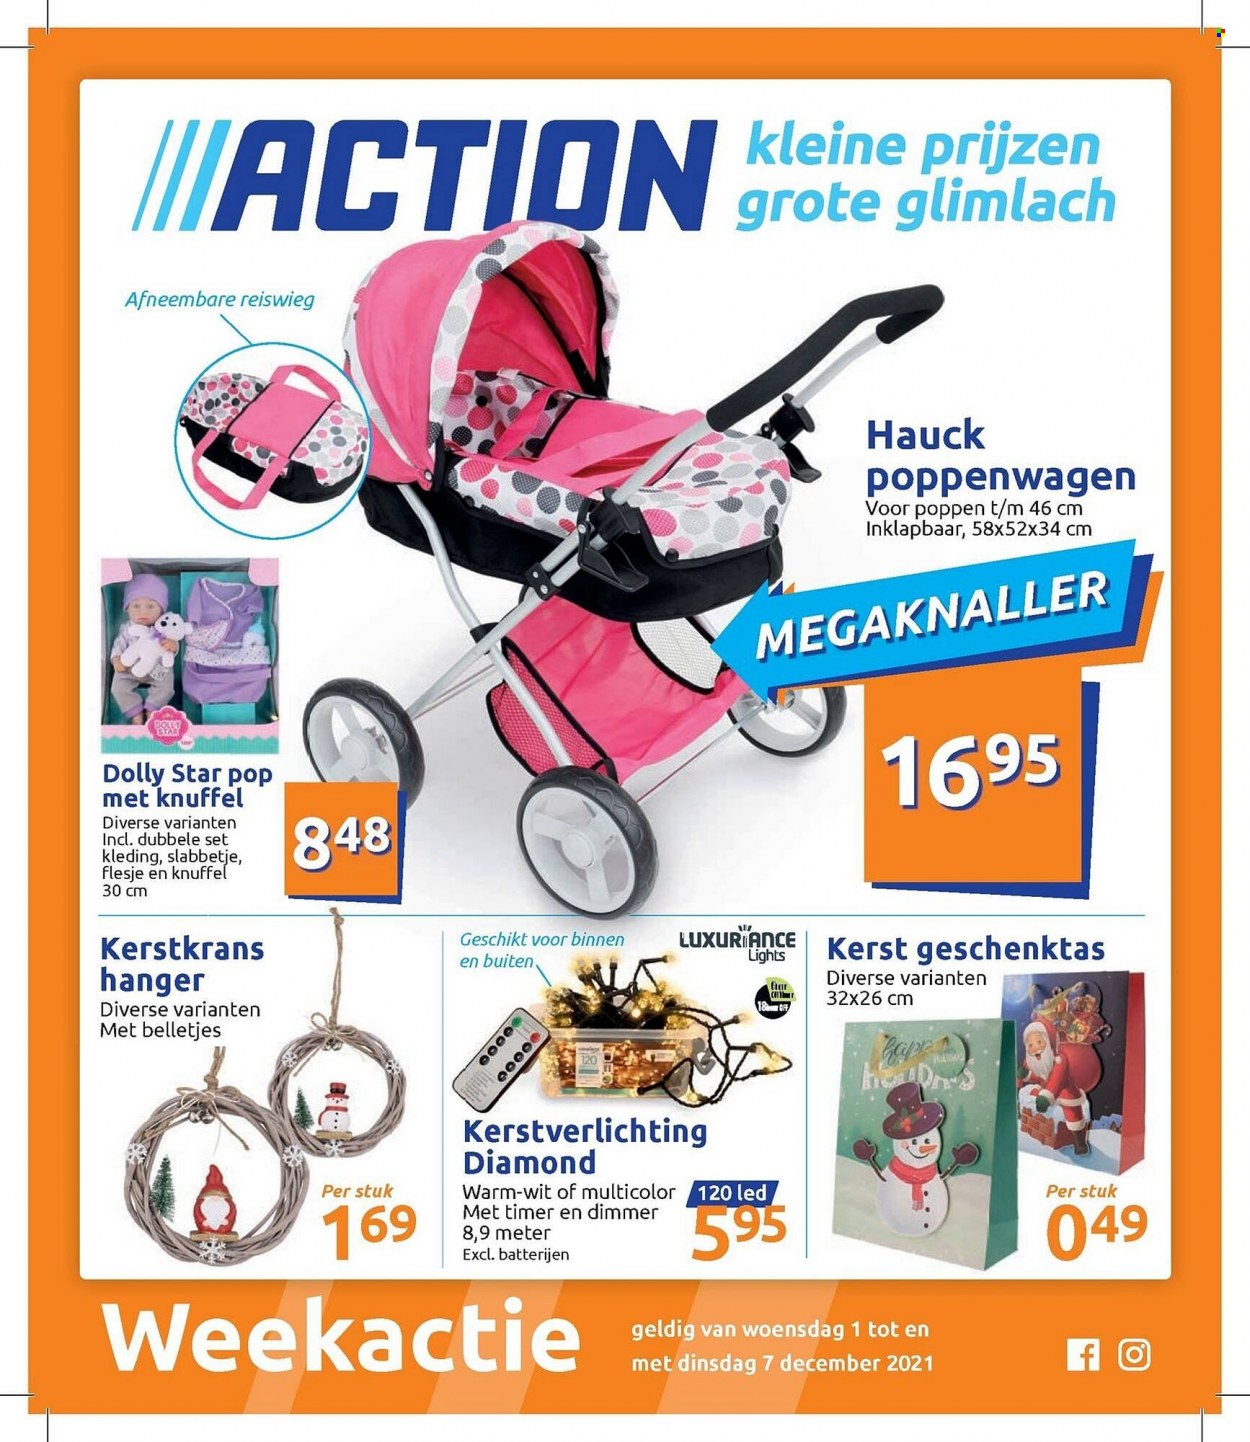 Action-aanbieding - 1.12.2021 - 7.12.2021 -  producten in de aanbieding - knuffel, poppenwagen, dolly. Pagina 1.